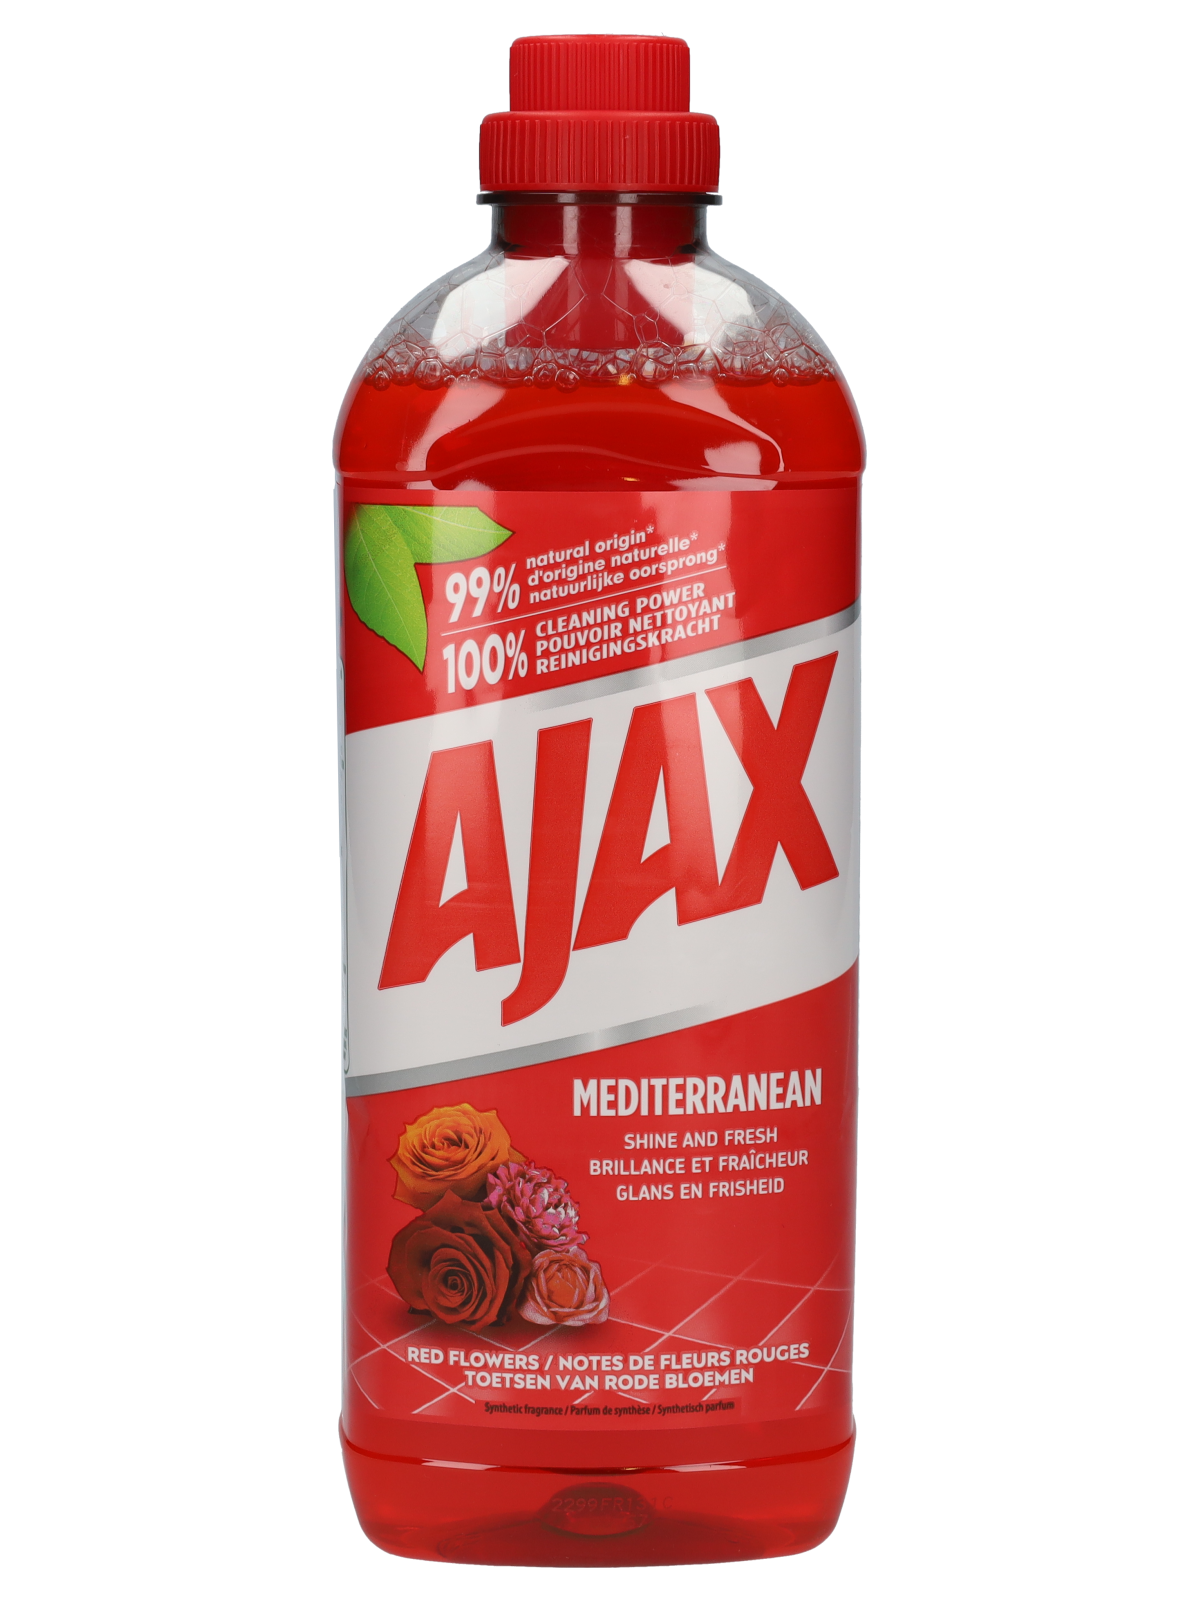 Soldaat Correct te rechtvaardigen Ajax allesreiniger - Red Flowers kopen? - Wibra België - Dat doe je goed.